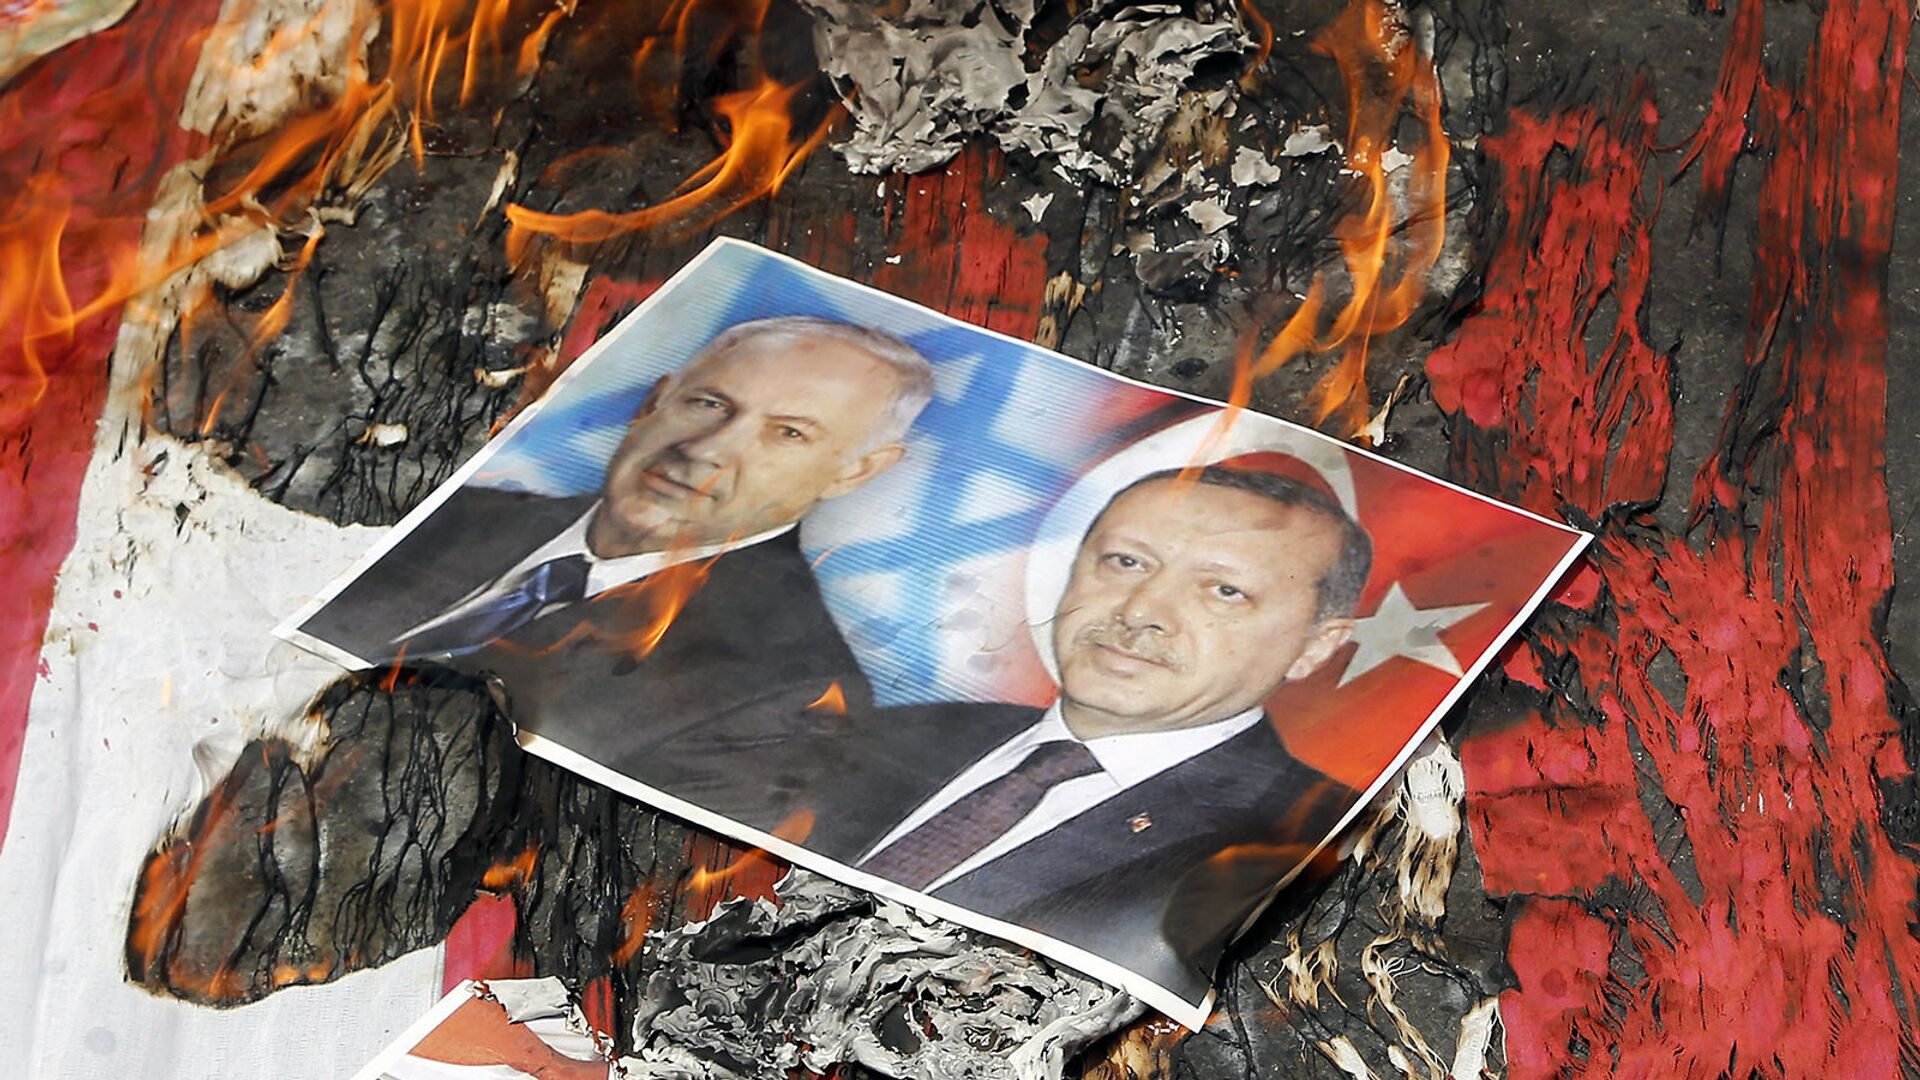 Портреты премьер-министра Израиля Биньямина Нетаньяху и президента Турции Реджепа Эрдогана лежат на флаге США в огне во время парада в честь Дня Аль-Кудса (1 июля 2016). Тегеран - Sputnik Армения, 1920, 16.05.2021